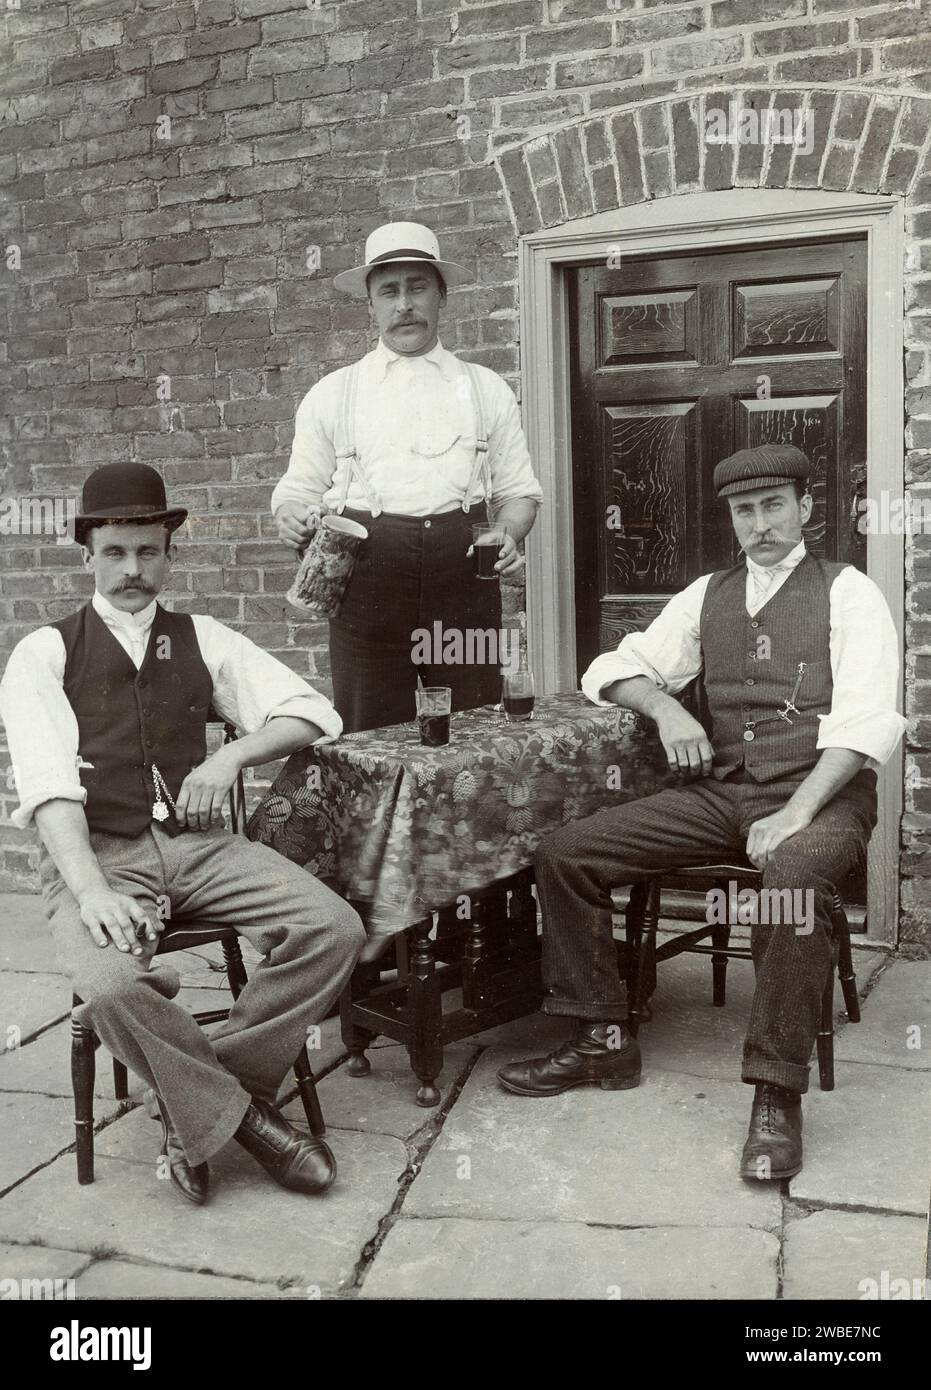 Drei britische Trinker oder Männer, die in der Straße vor der Terrasse des Brick House trinken England Großbritannien. Vintage- oder historische Schwarzweiß- oder Schwarzweiß-Fotografie c1900 Stockfoto